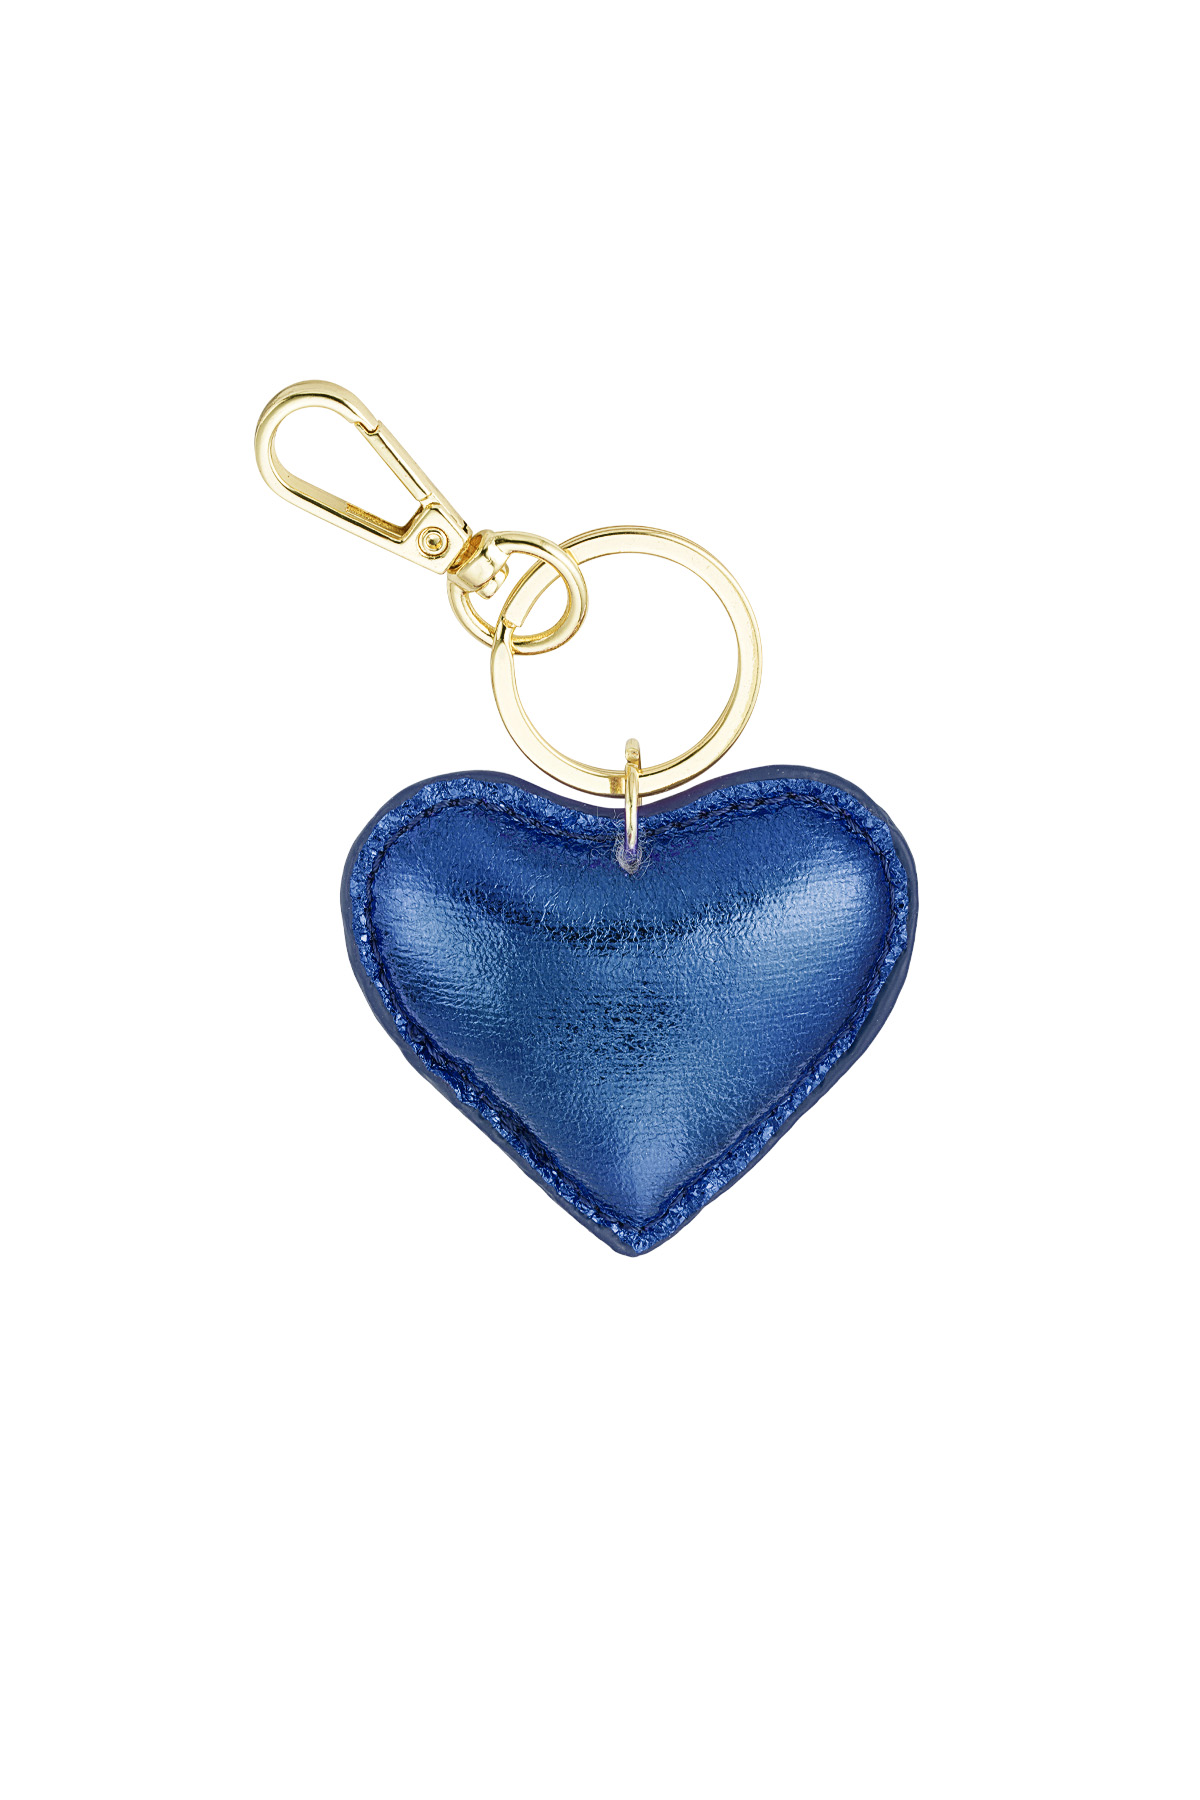 Anahtarlık kalp - mavi h5 